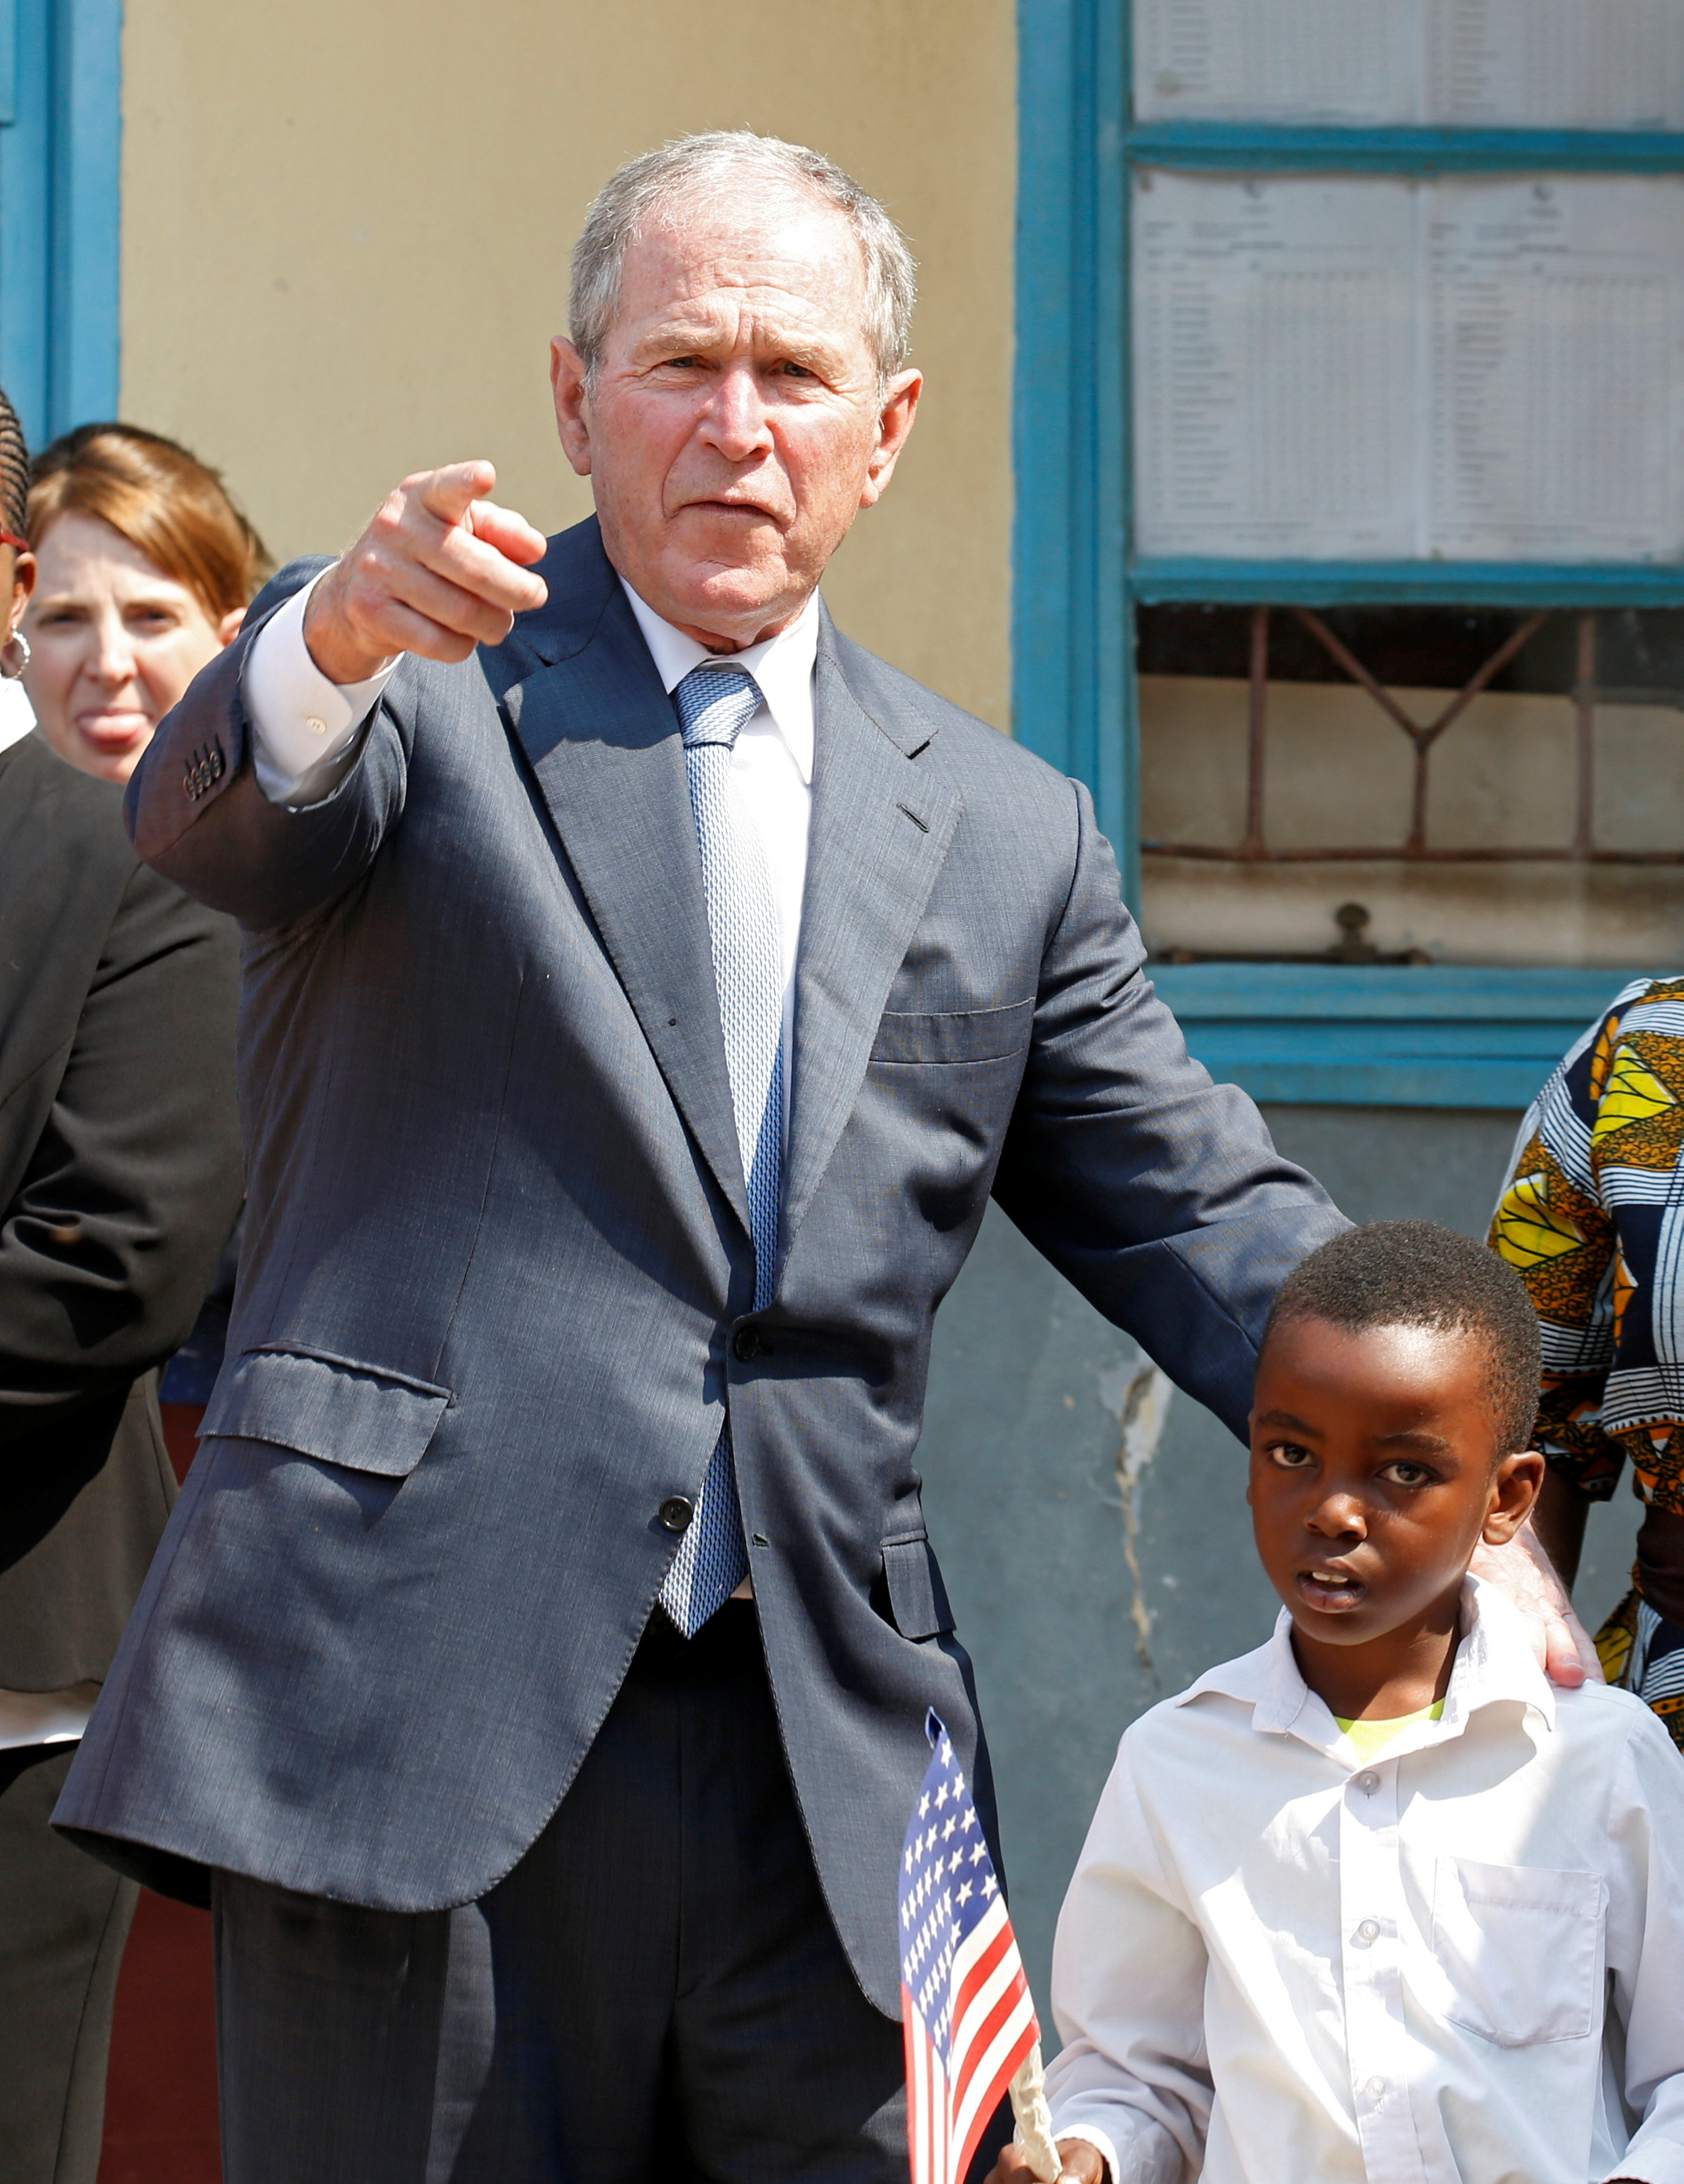 جورج بوش يتلقط صورة مع طفل صغير فى أحدى المدارس